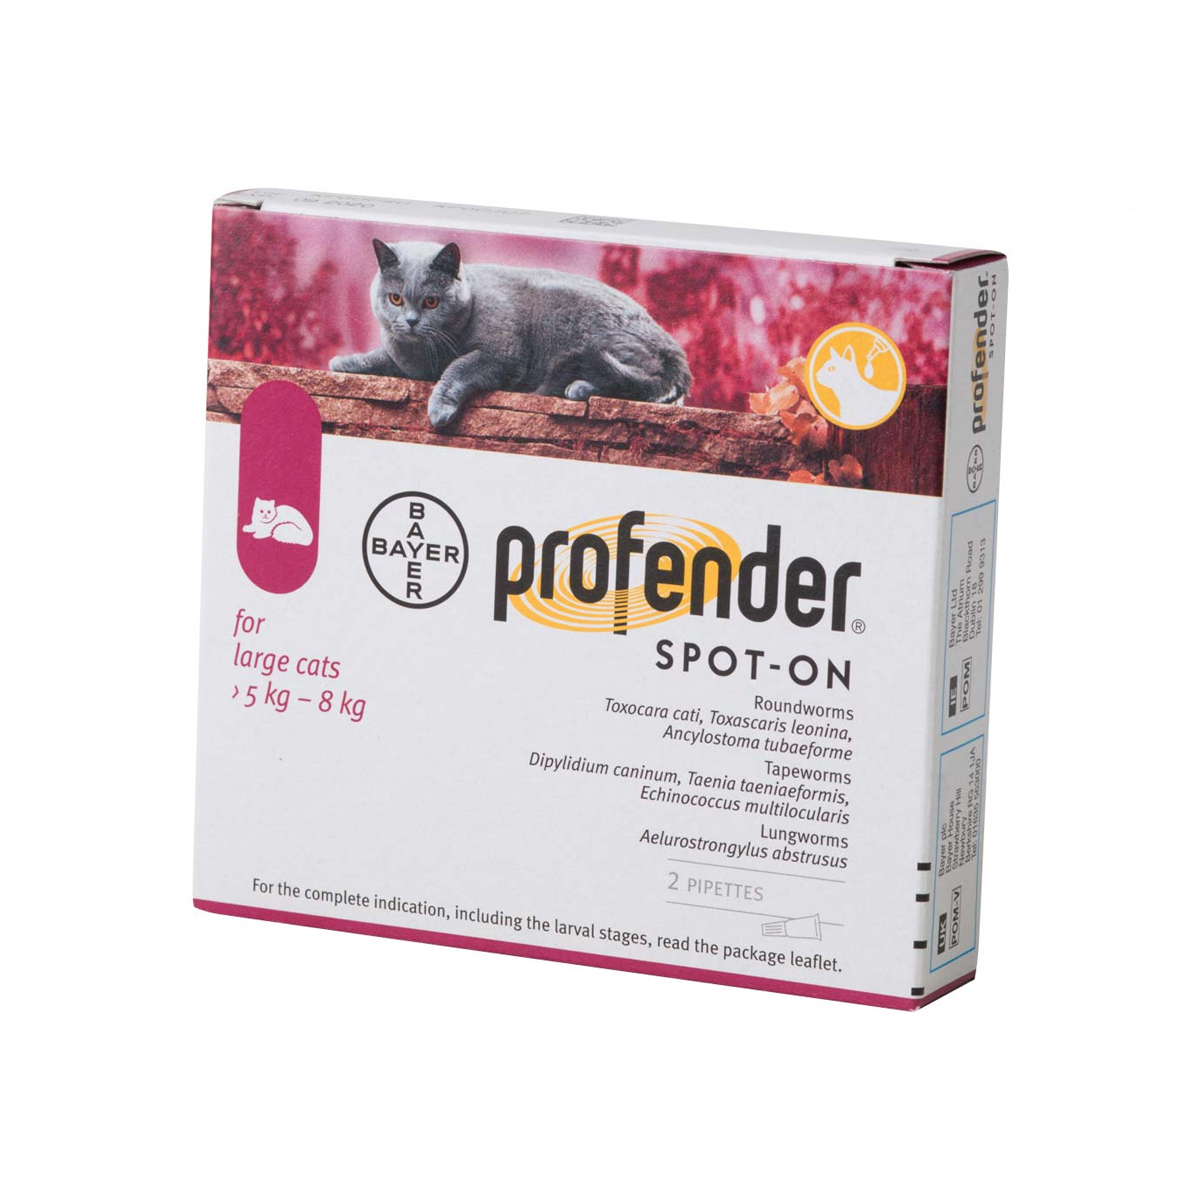 Pipetă antiparazitară Profender Cat L, pentru pisici intre 5-8kg Bayer AH